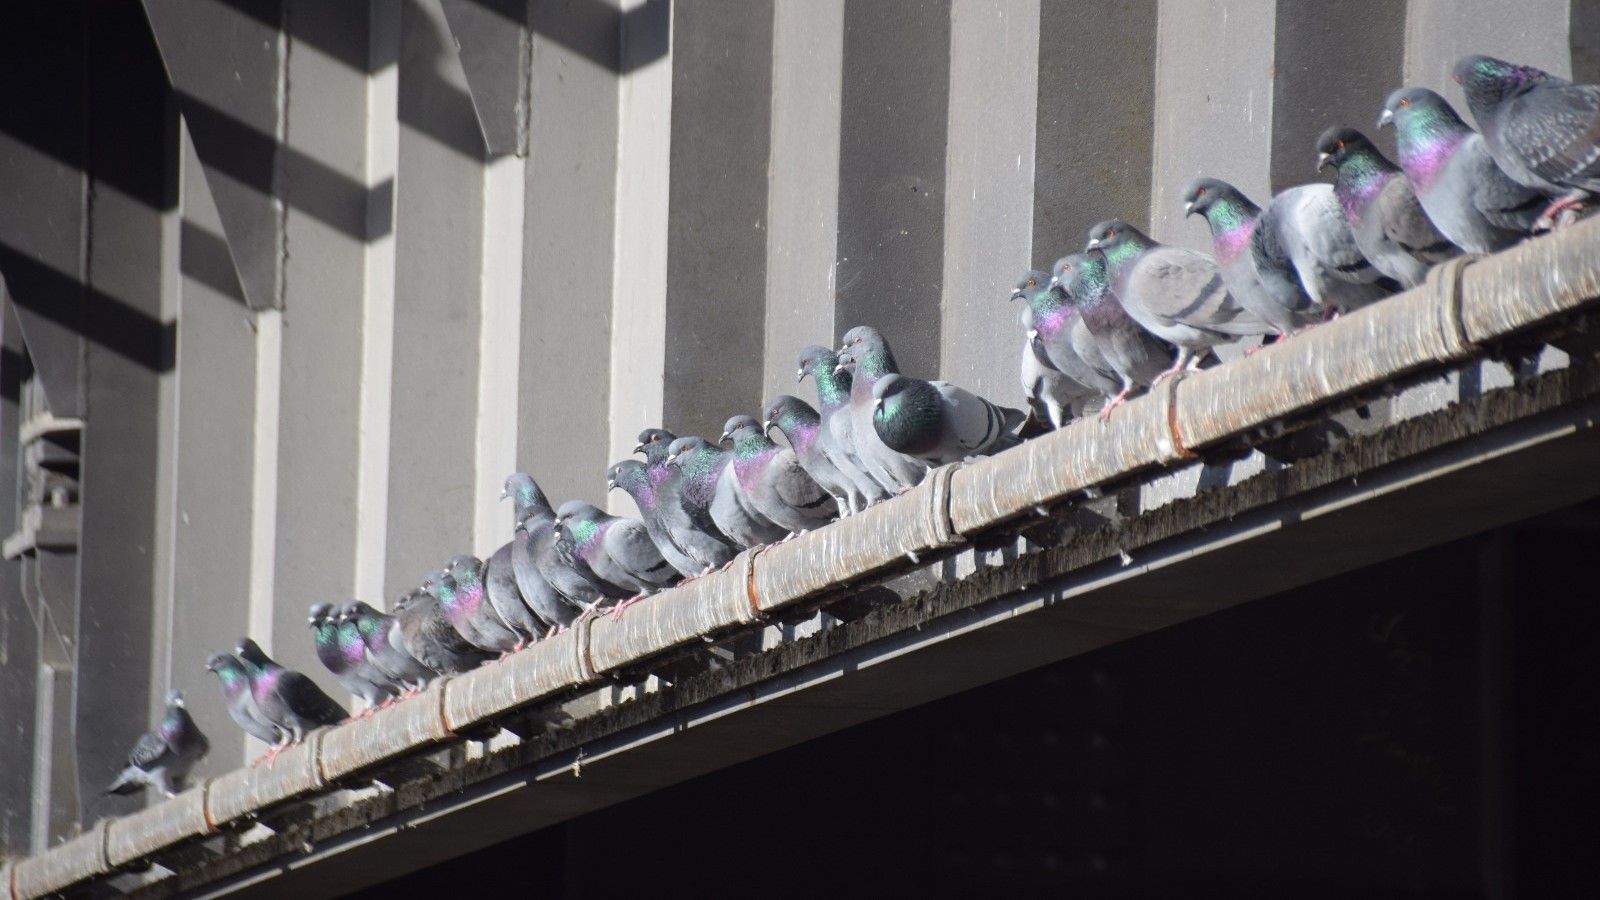 Taubenpopulation: Probleme eingestehen, Verantwortung zeigen